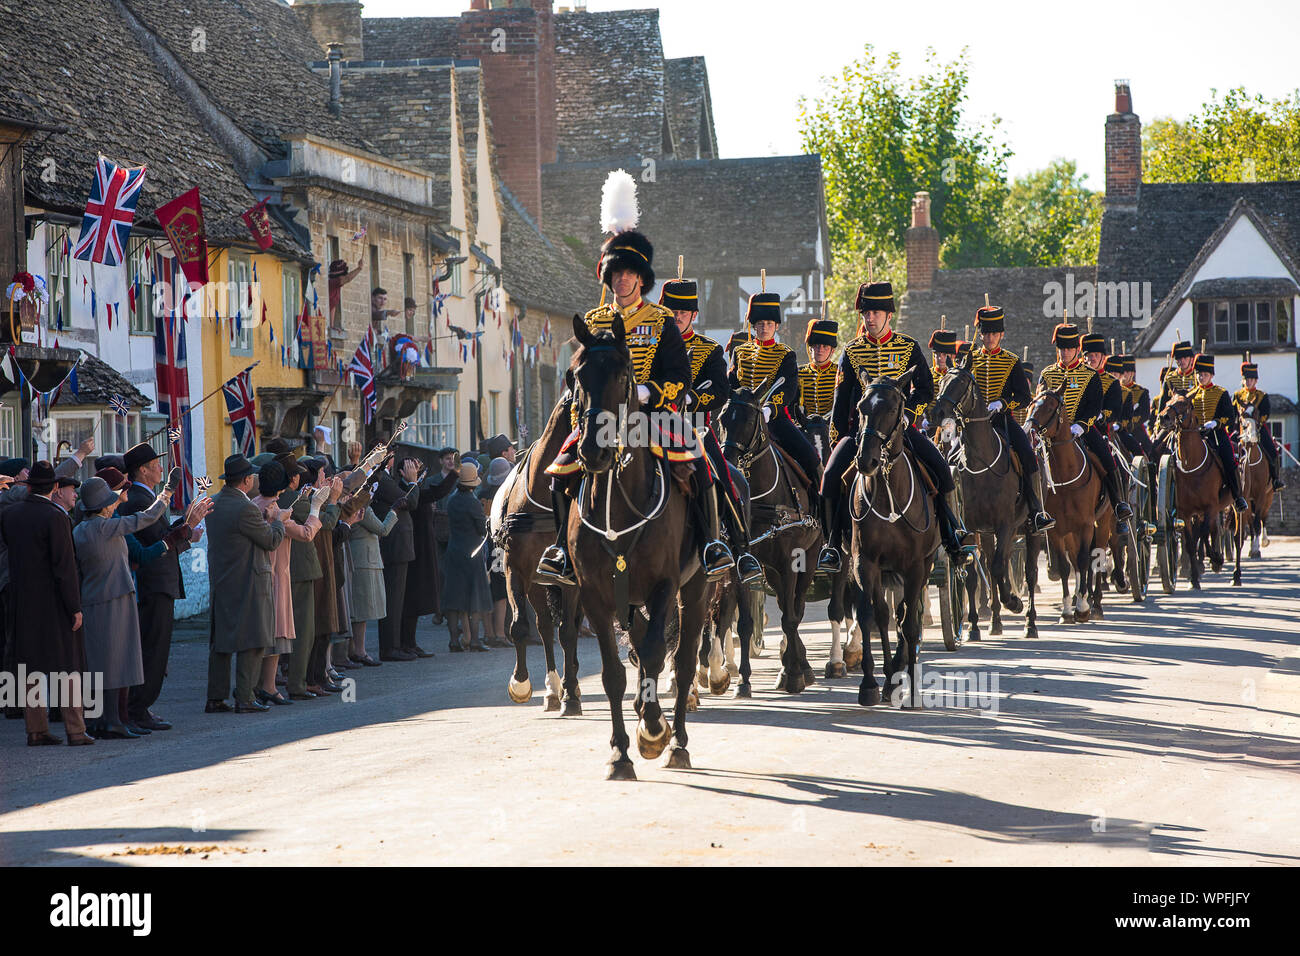 La troupe Kings Royal Horse Artillery pendant le tournage d'un film de smash TV tapez Downton Abbey pour le cinéma. La scène a été tourné dans le haut St le National Trust village de Lacock dans le Wiltshire avec 80 chevaux et d'armes à feu défilant à travers la rue. Banque D'Images